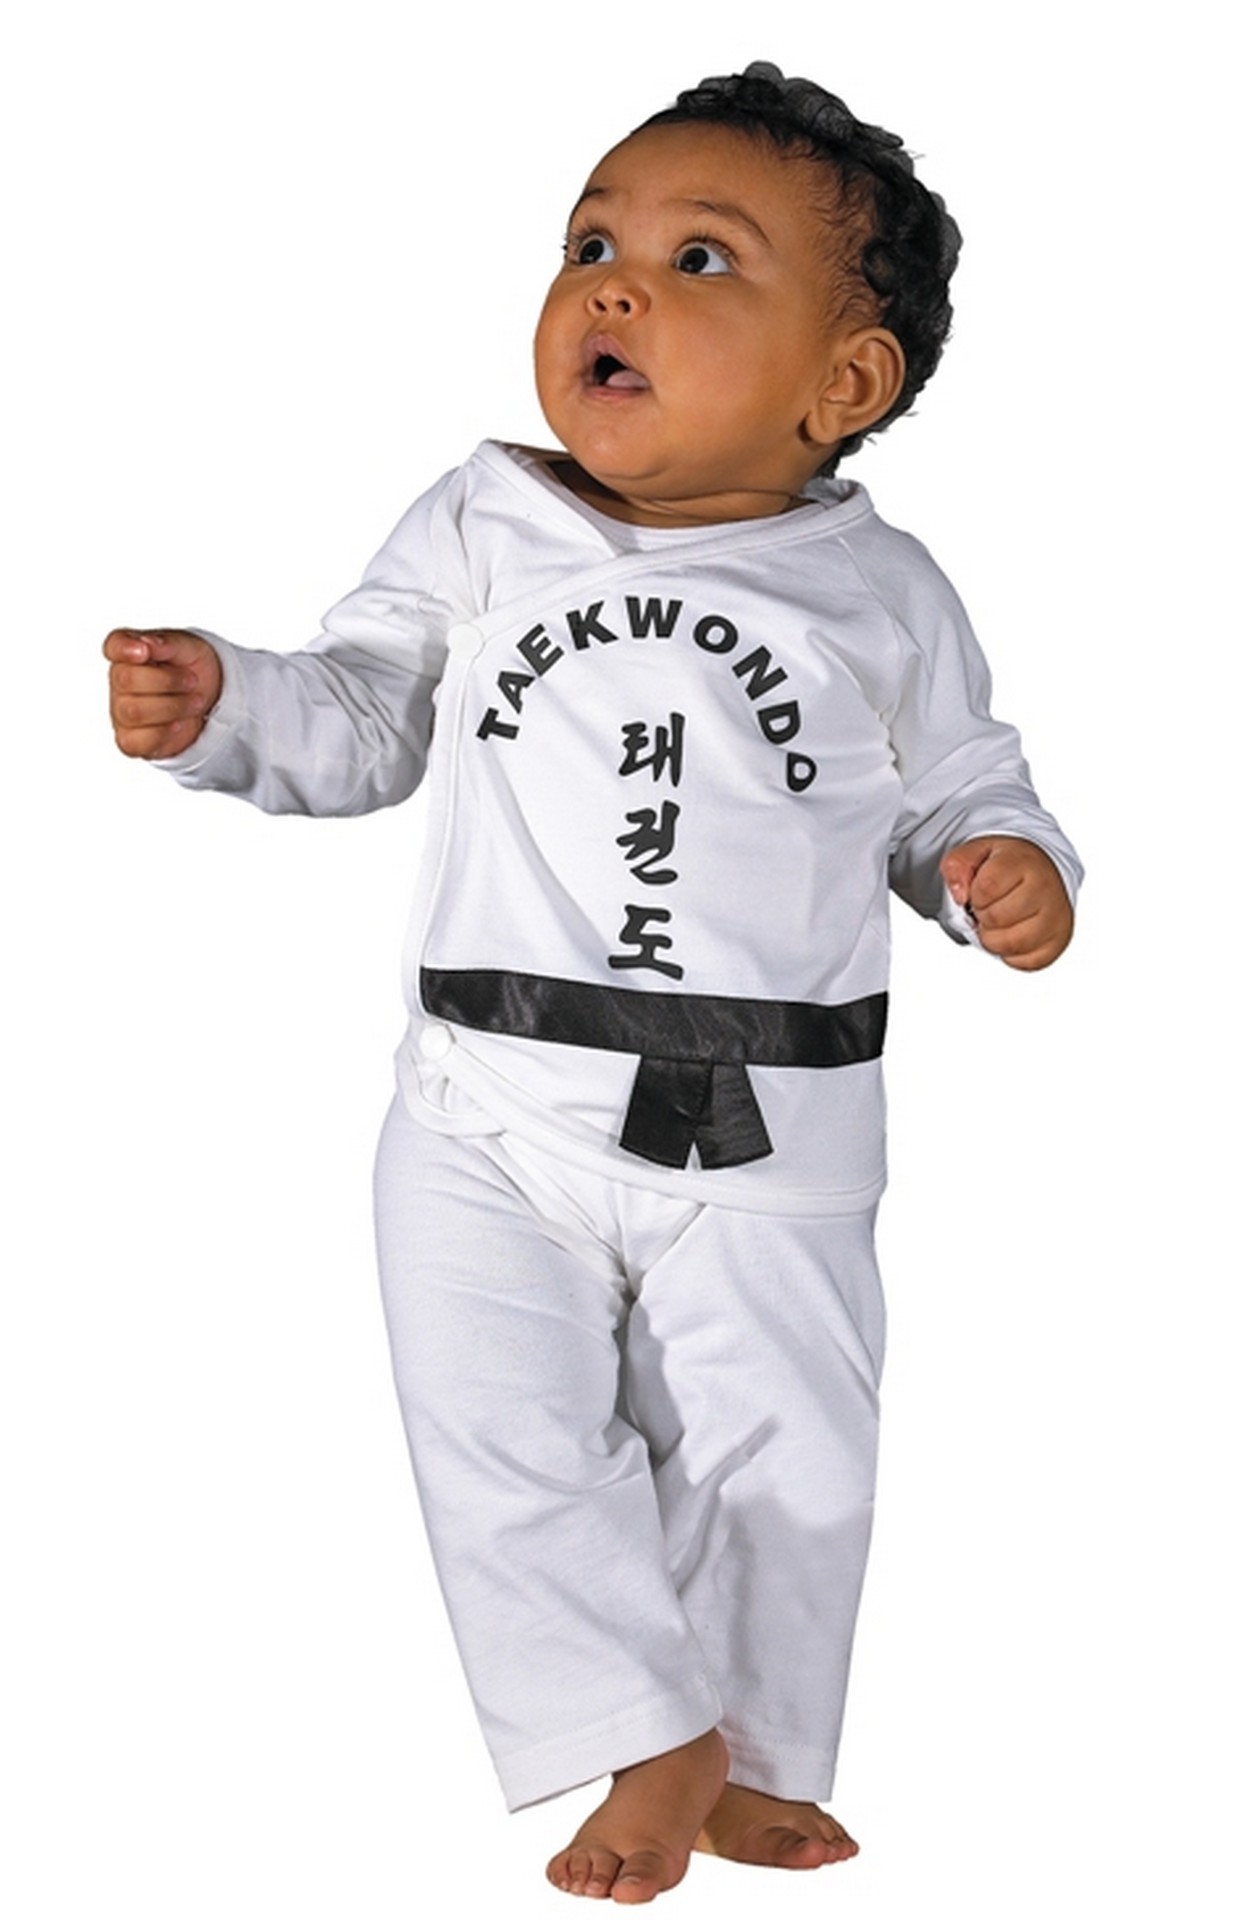 Babystrampler mit Kampfsportmotiven auch lustig von KWON 